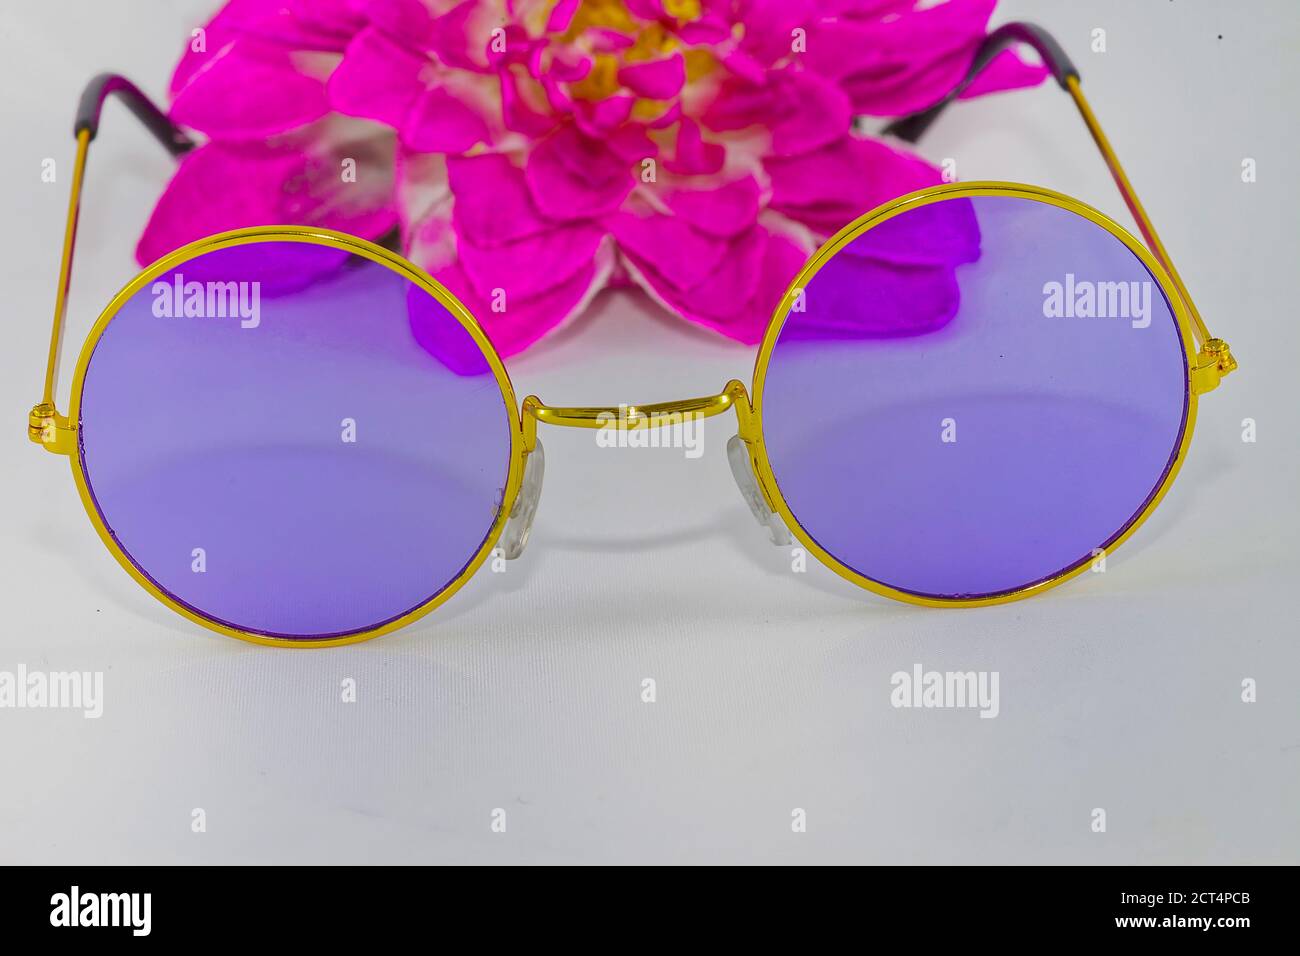 ola ala Inútil Gafas de sol hippie Chic. Imagen de stock. Gafas de sol redondas con un  cristal púrpura, marco dorado y flor rosa. Aislado sobre fondo blanco  Fotografía de stock - Alamy